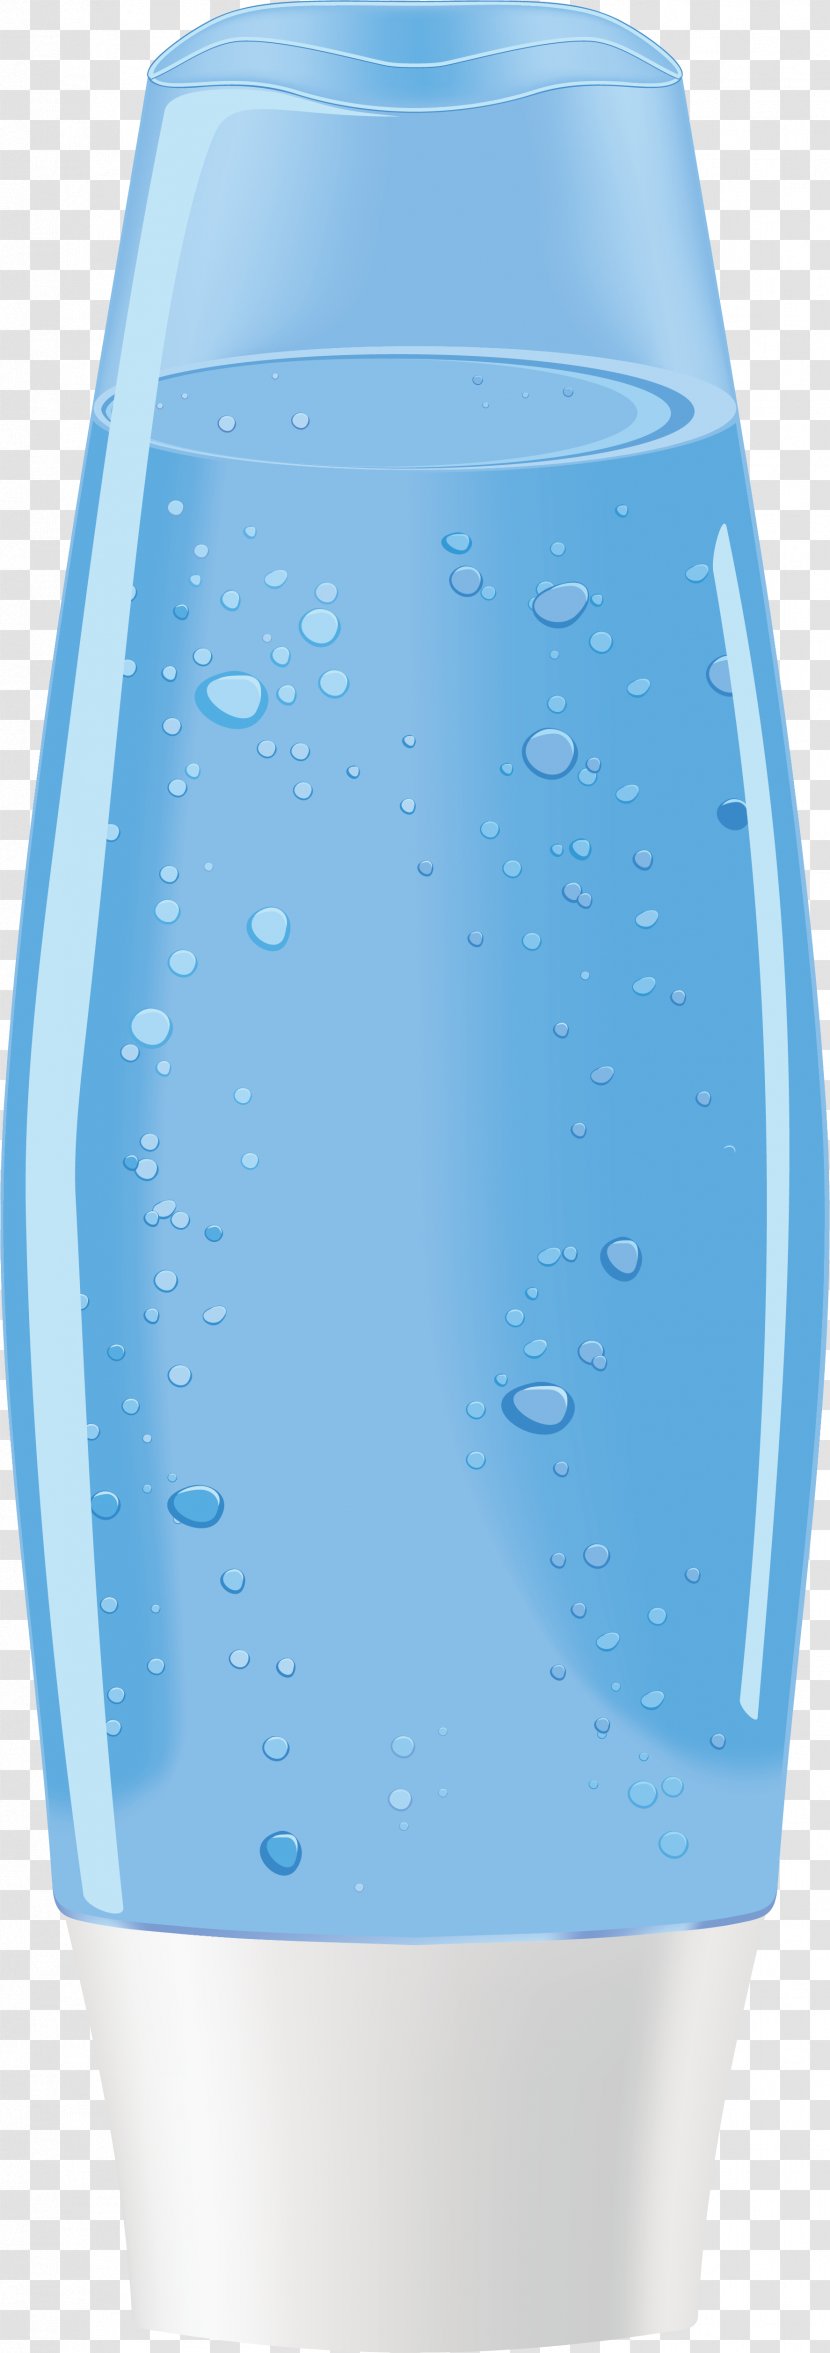 Plastic Bottle Packaging And Labeling Material Envase - Designer - Shampoo Transparent PNG